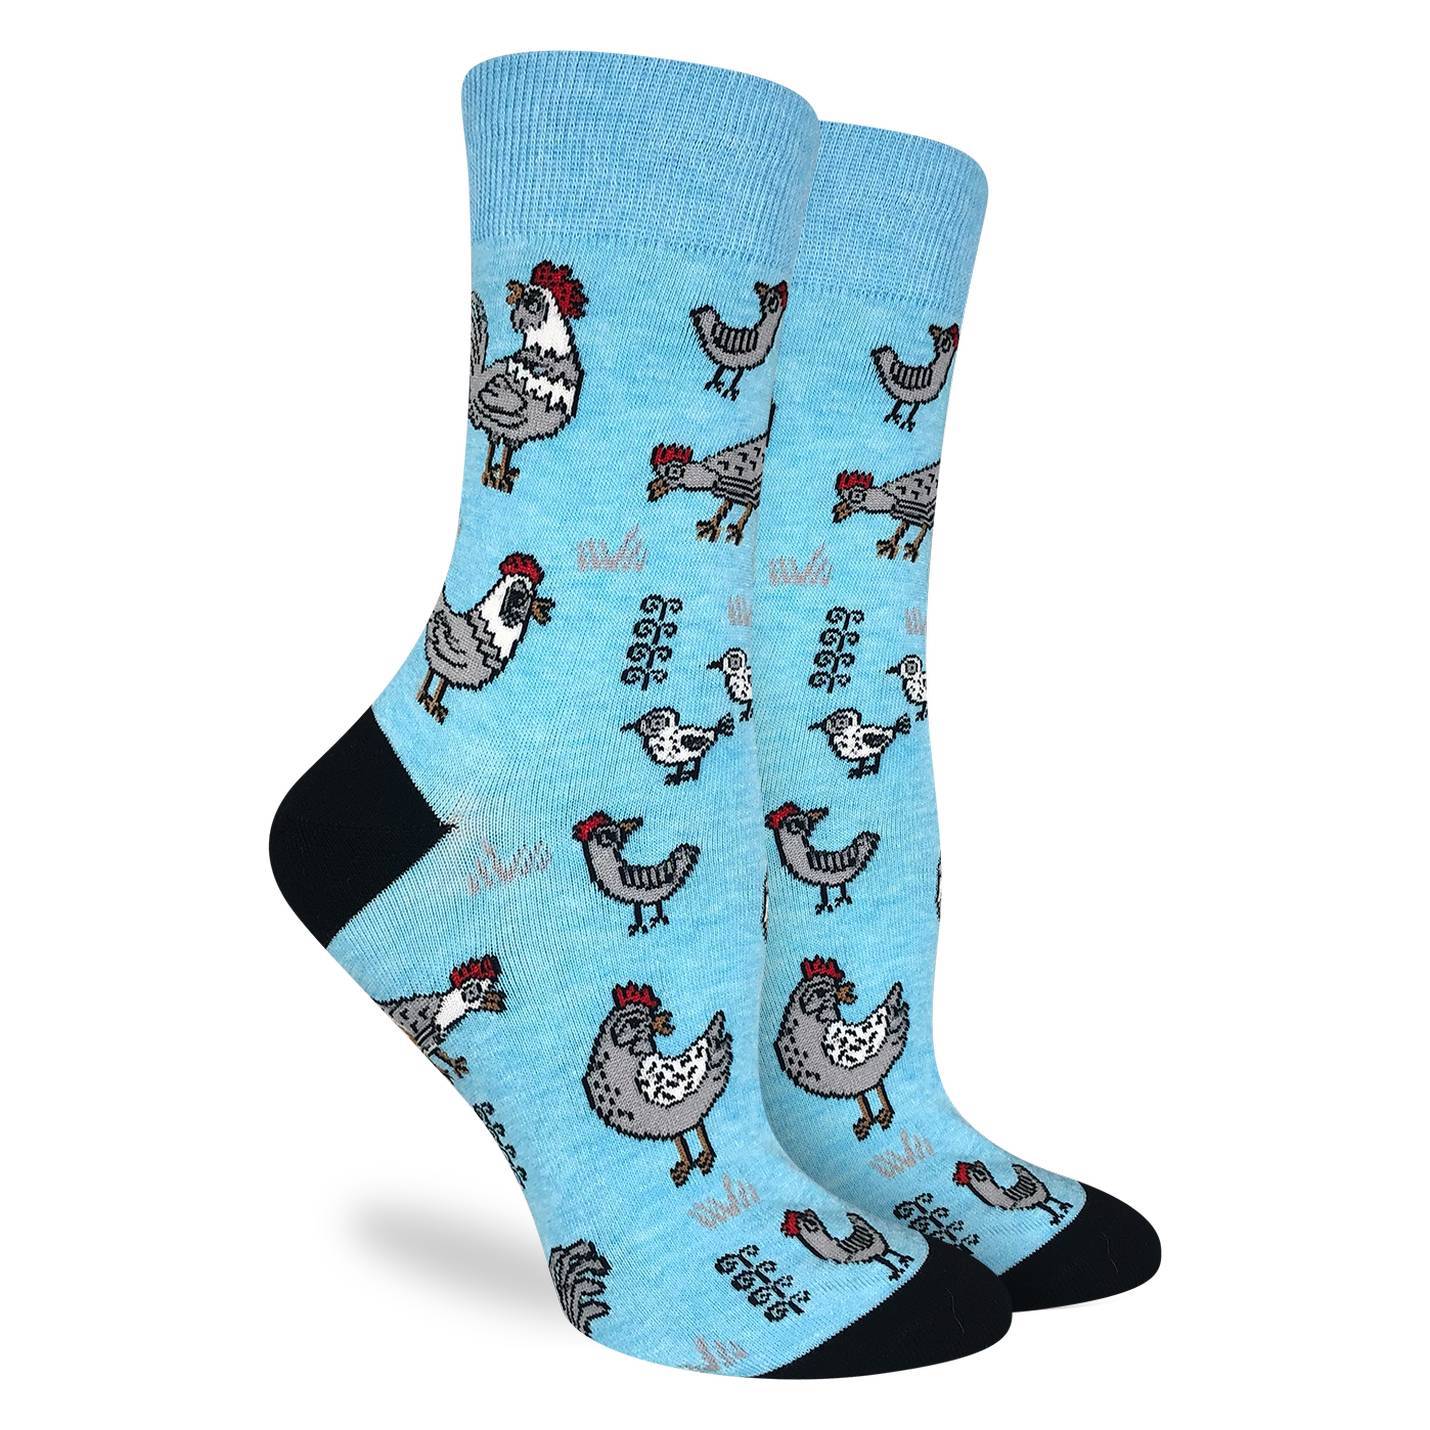 Good Luck Sock - Chicken socks Women's